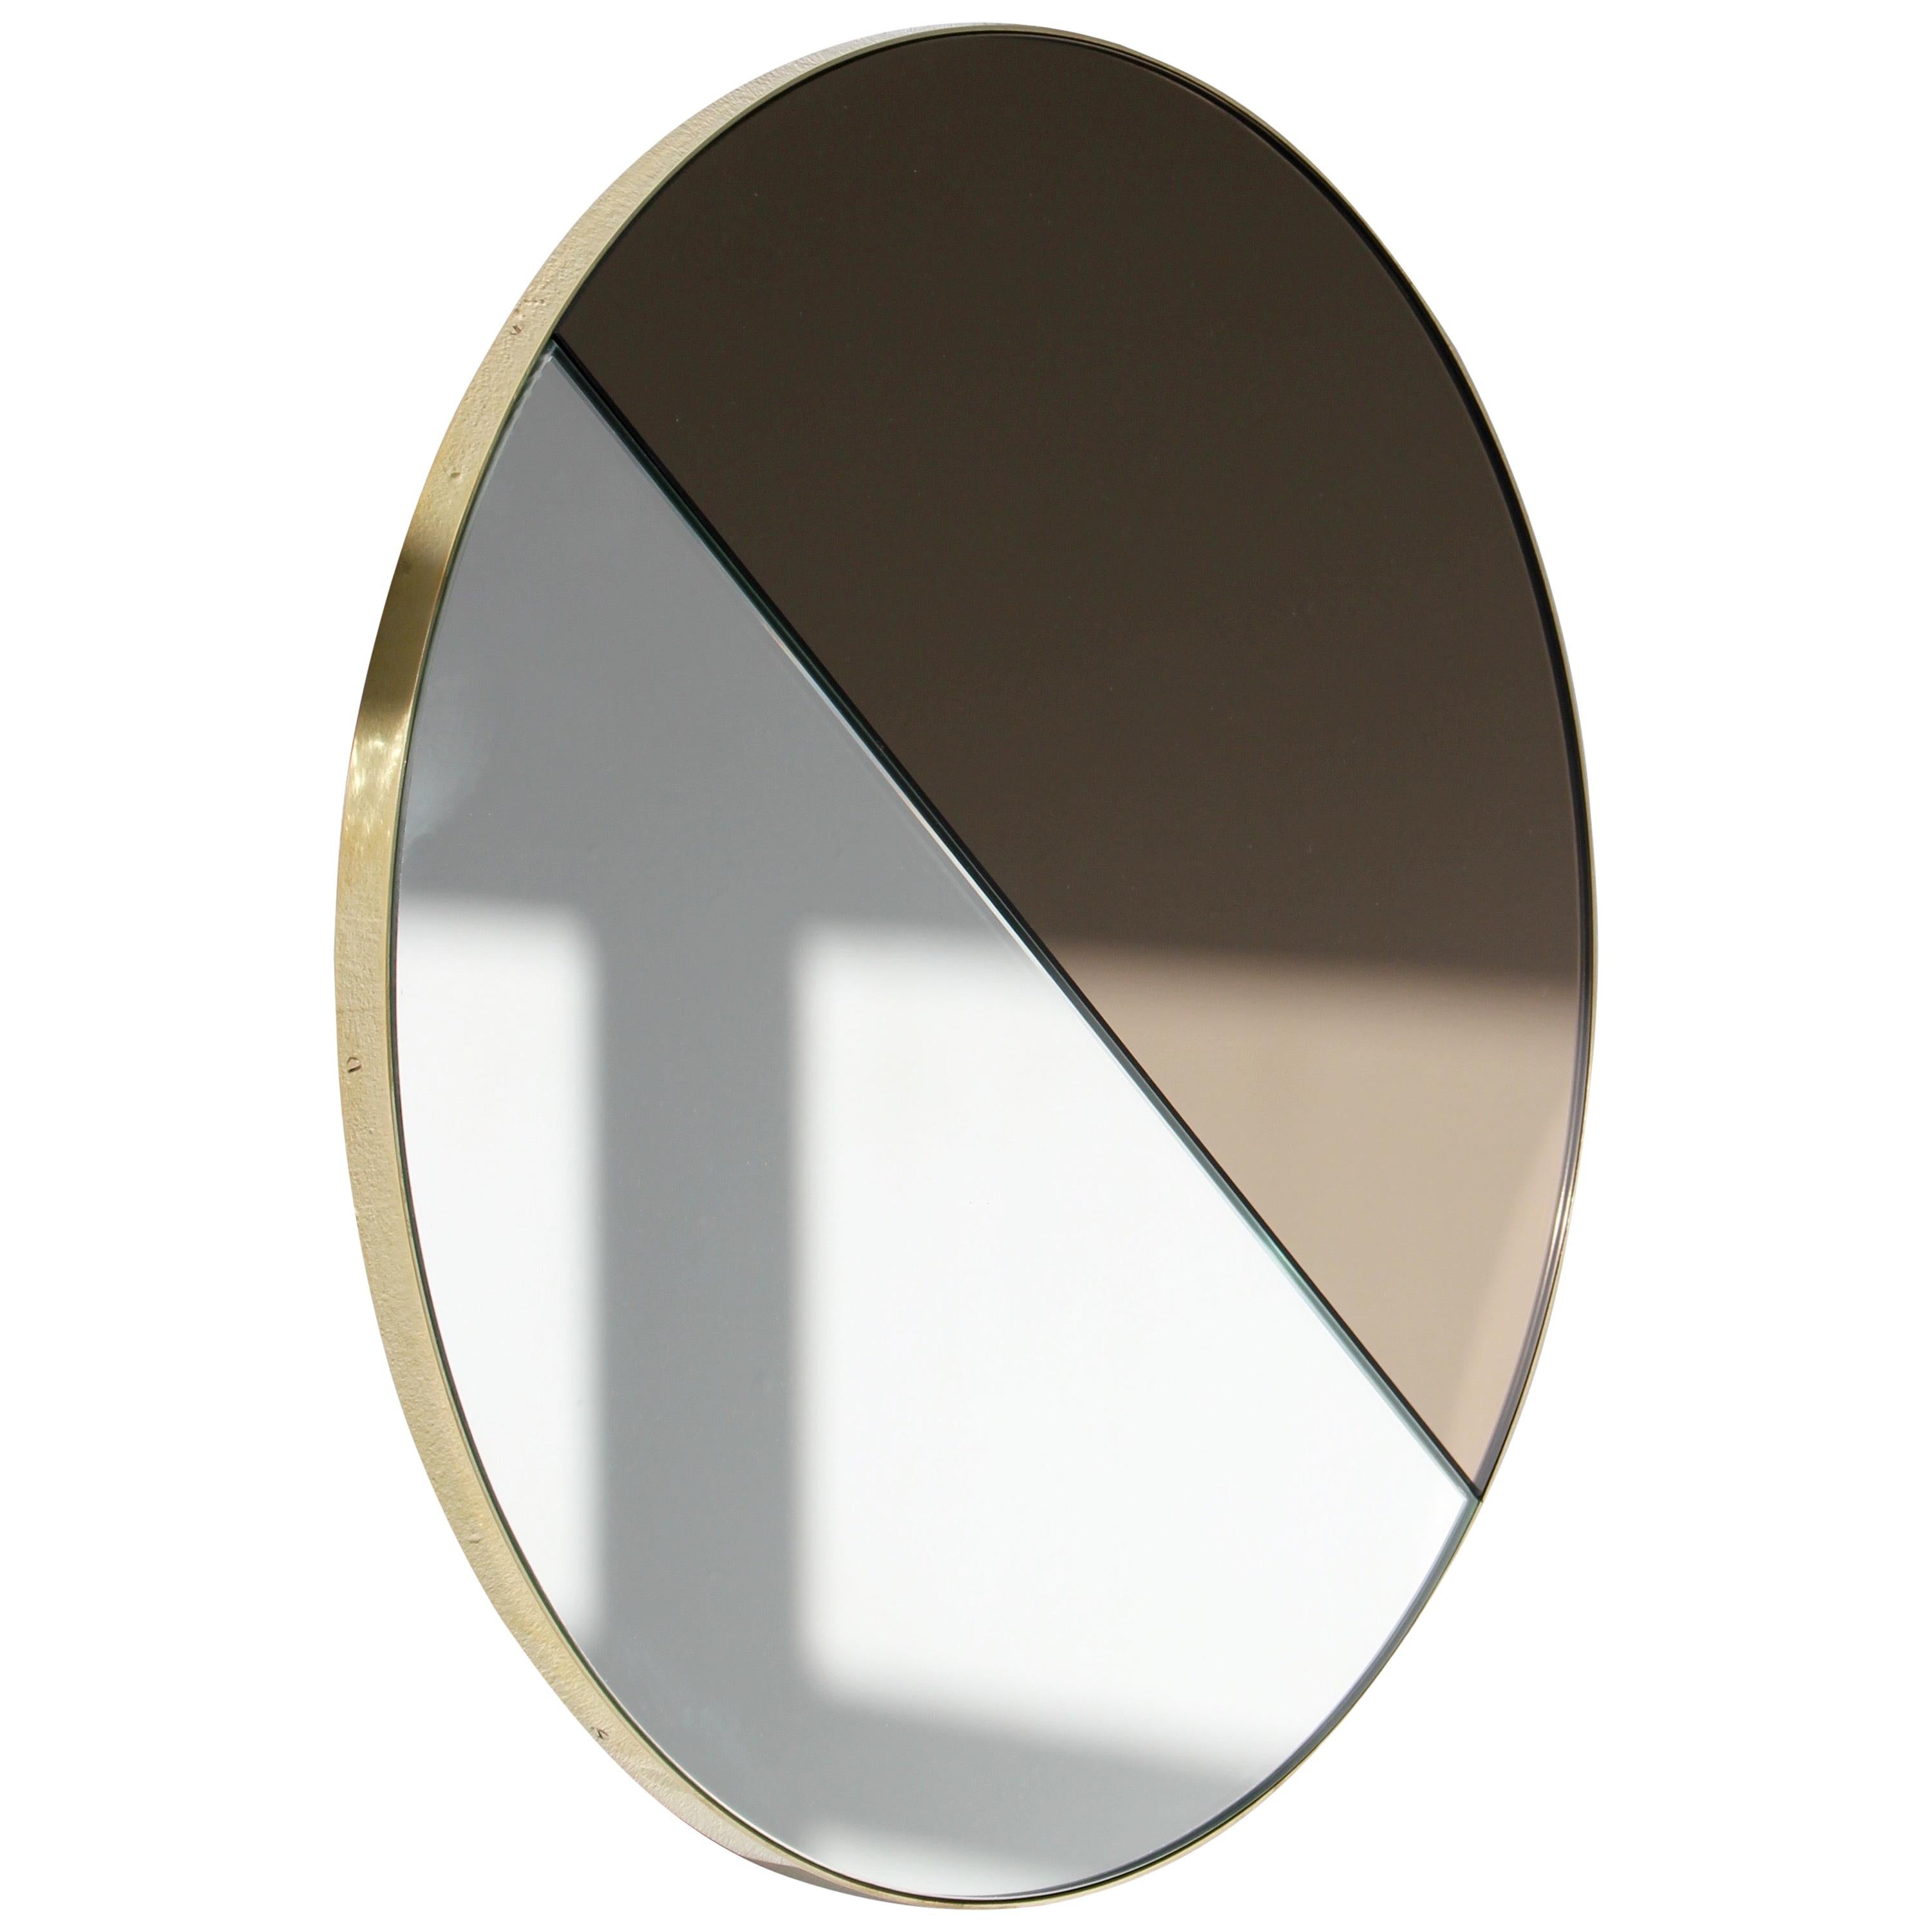 Orbis Dualis Runder Spiegel aus Silber und Bronze mit Messingrahmen, groß